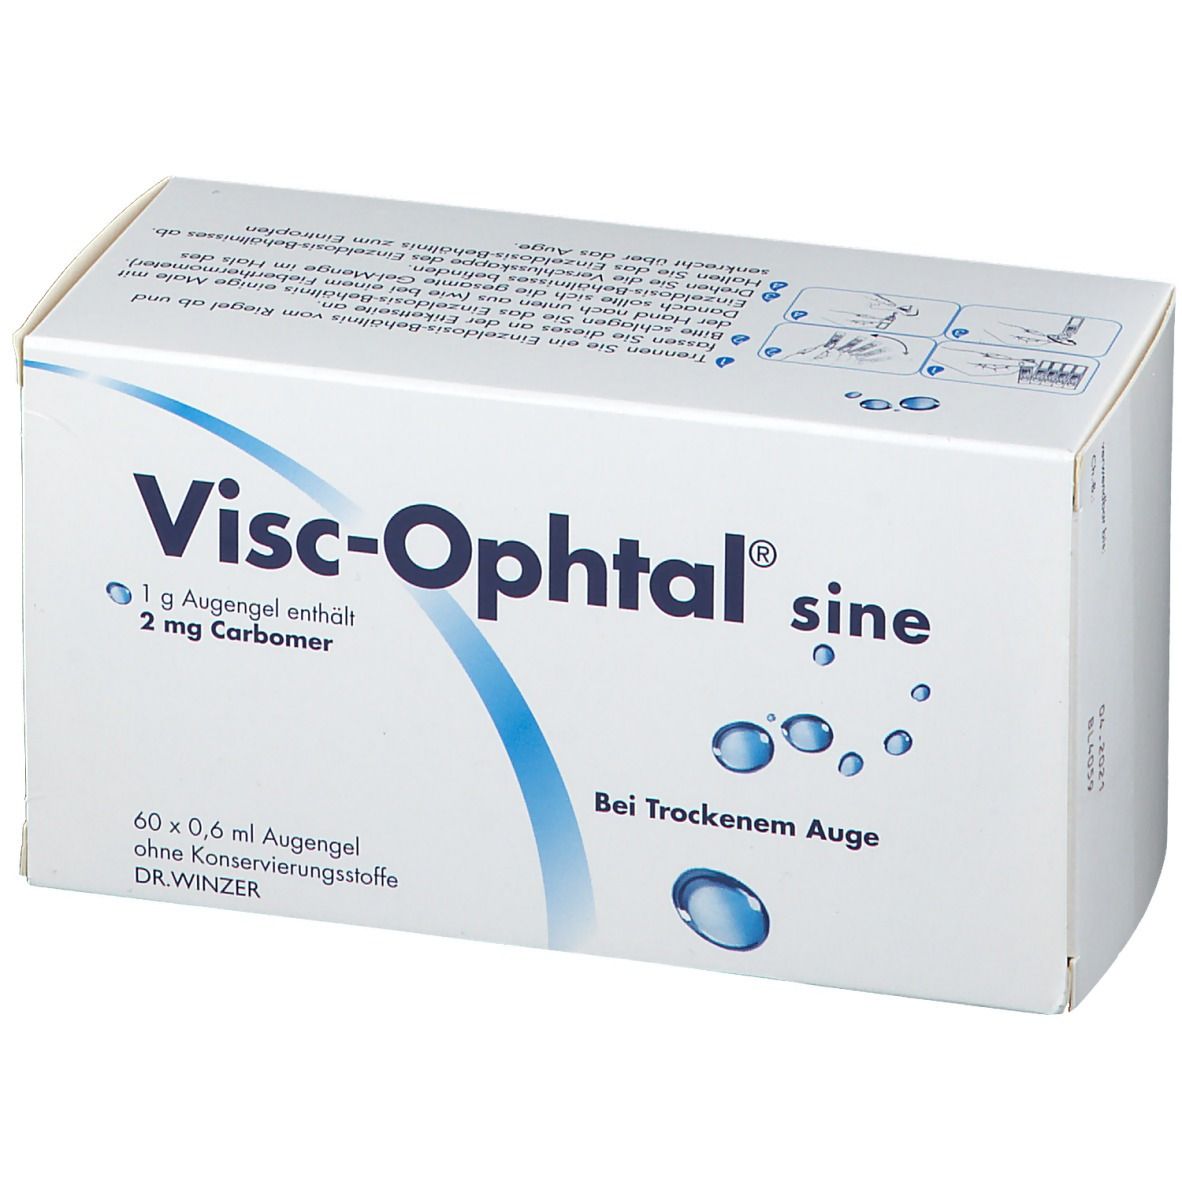 Visc-Ophtal® sine